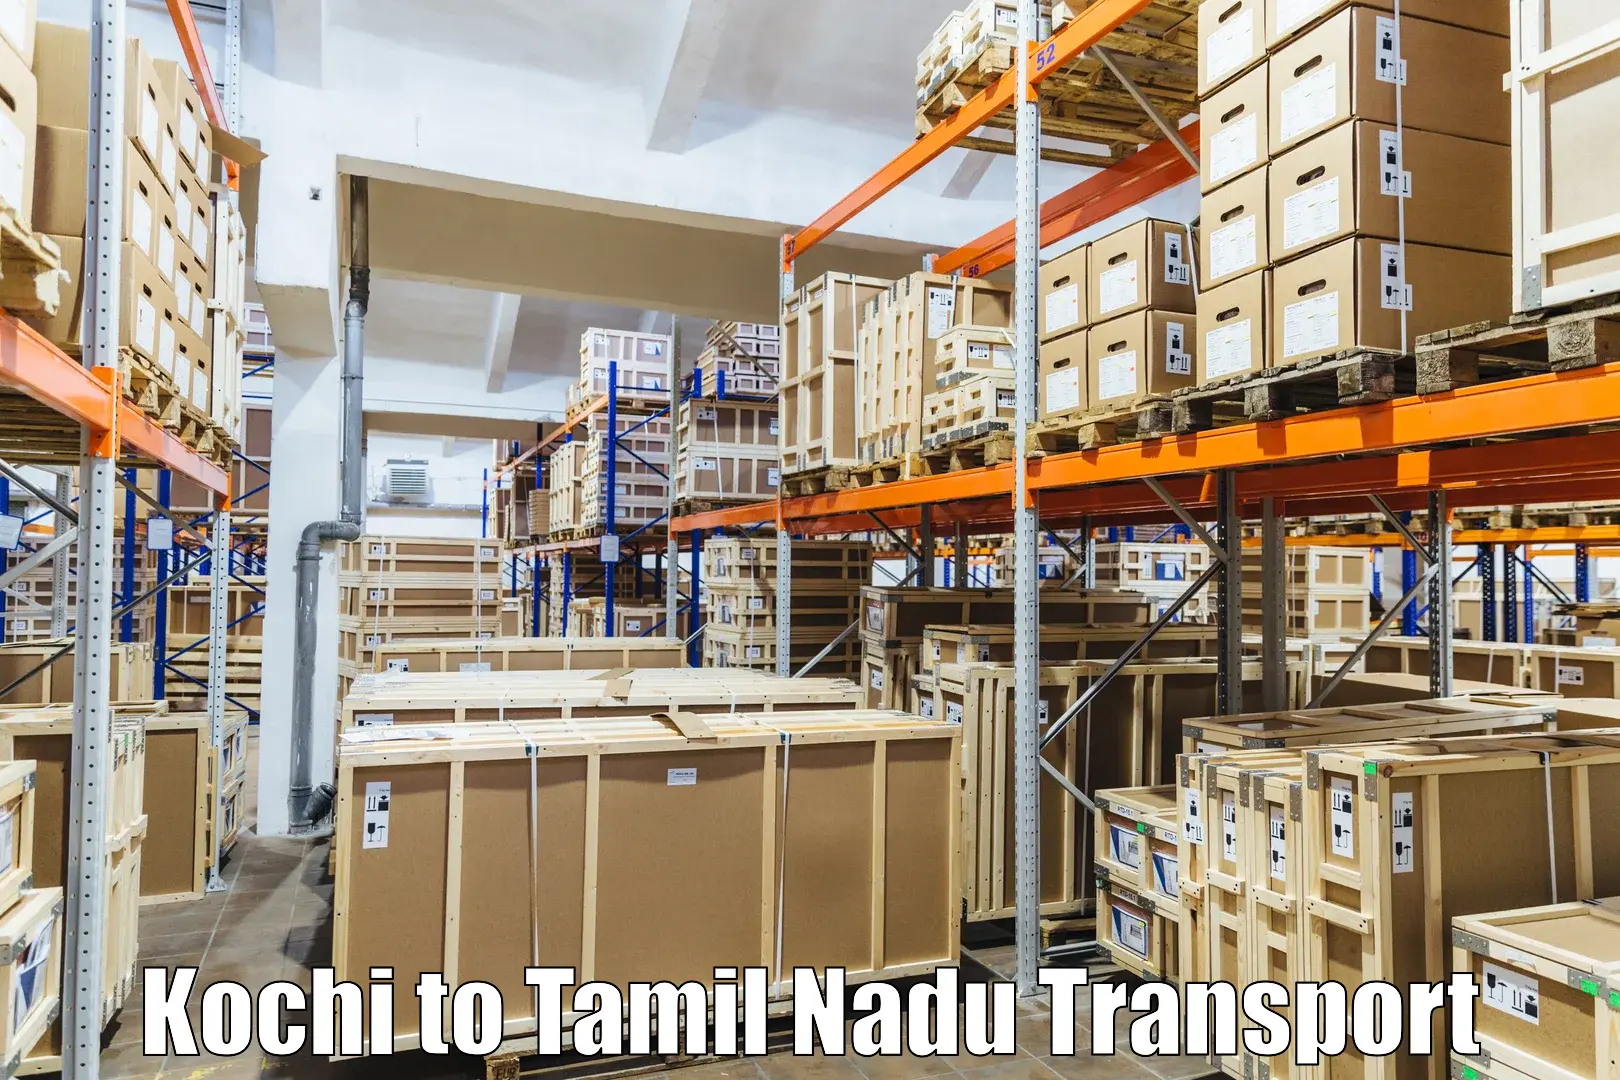 Nationwide transport services Kochi to Udumalaipettai